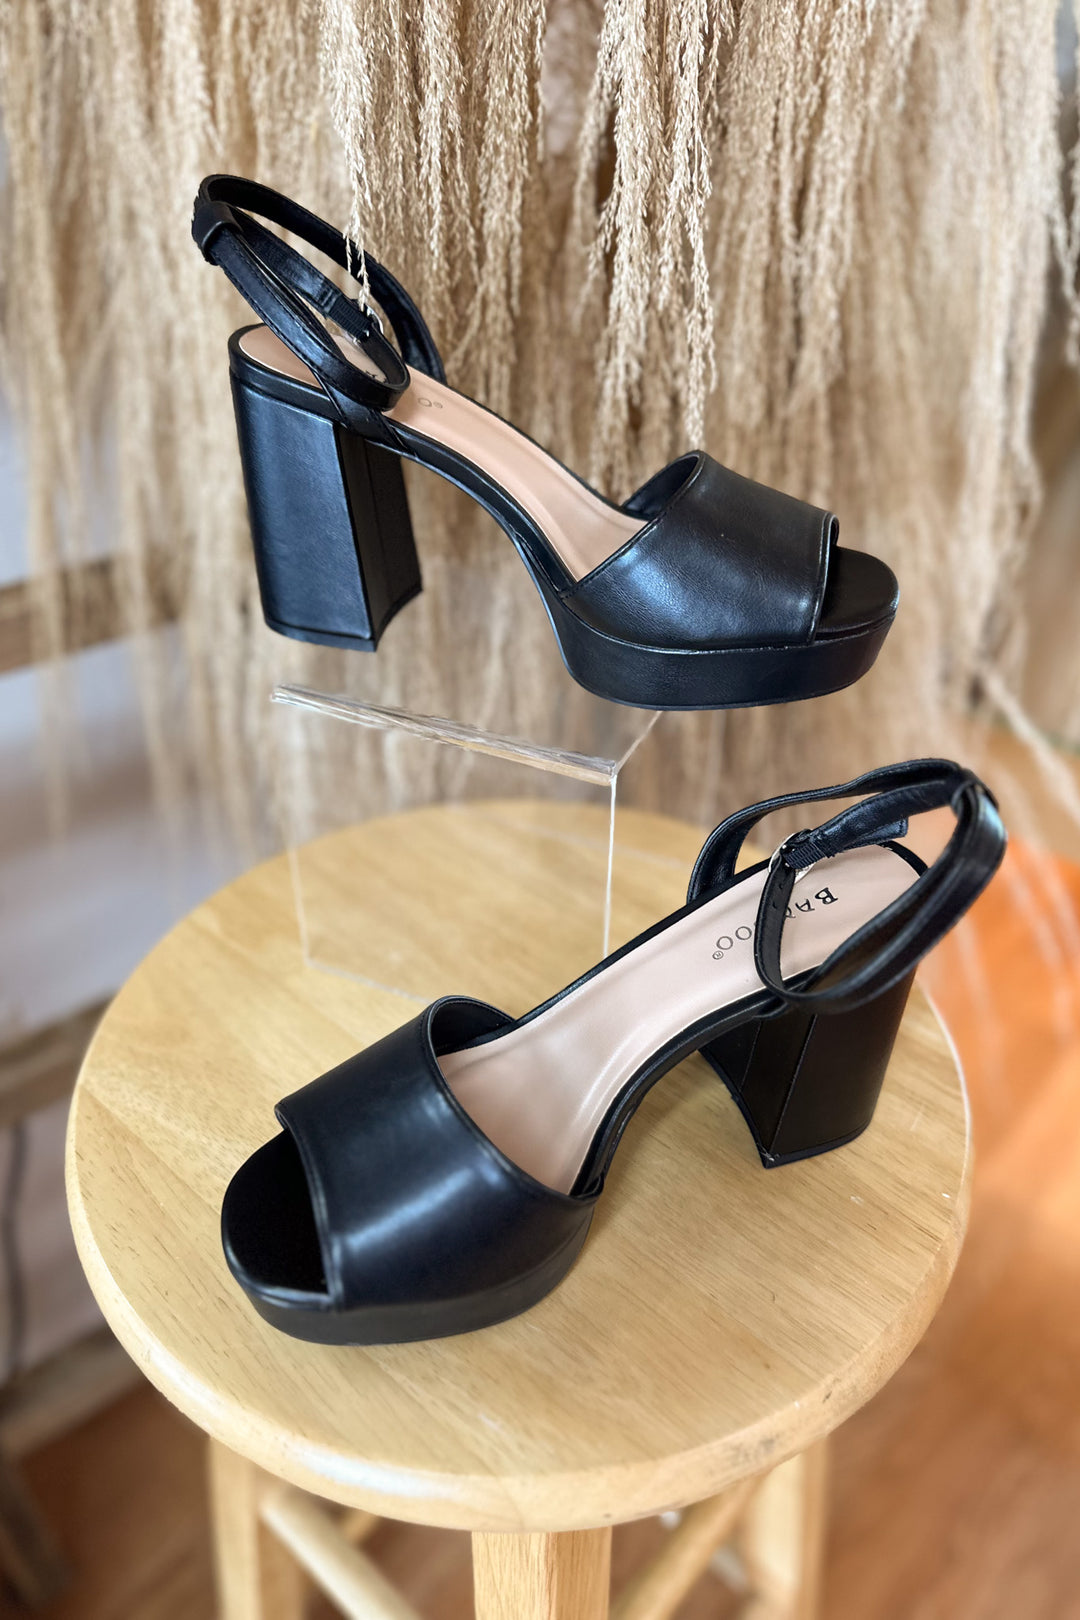 Step Up Heels in Black - ShopSpoiled